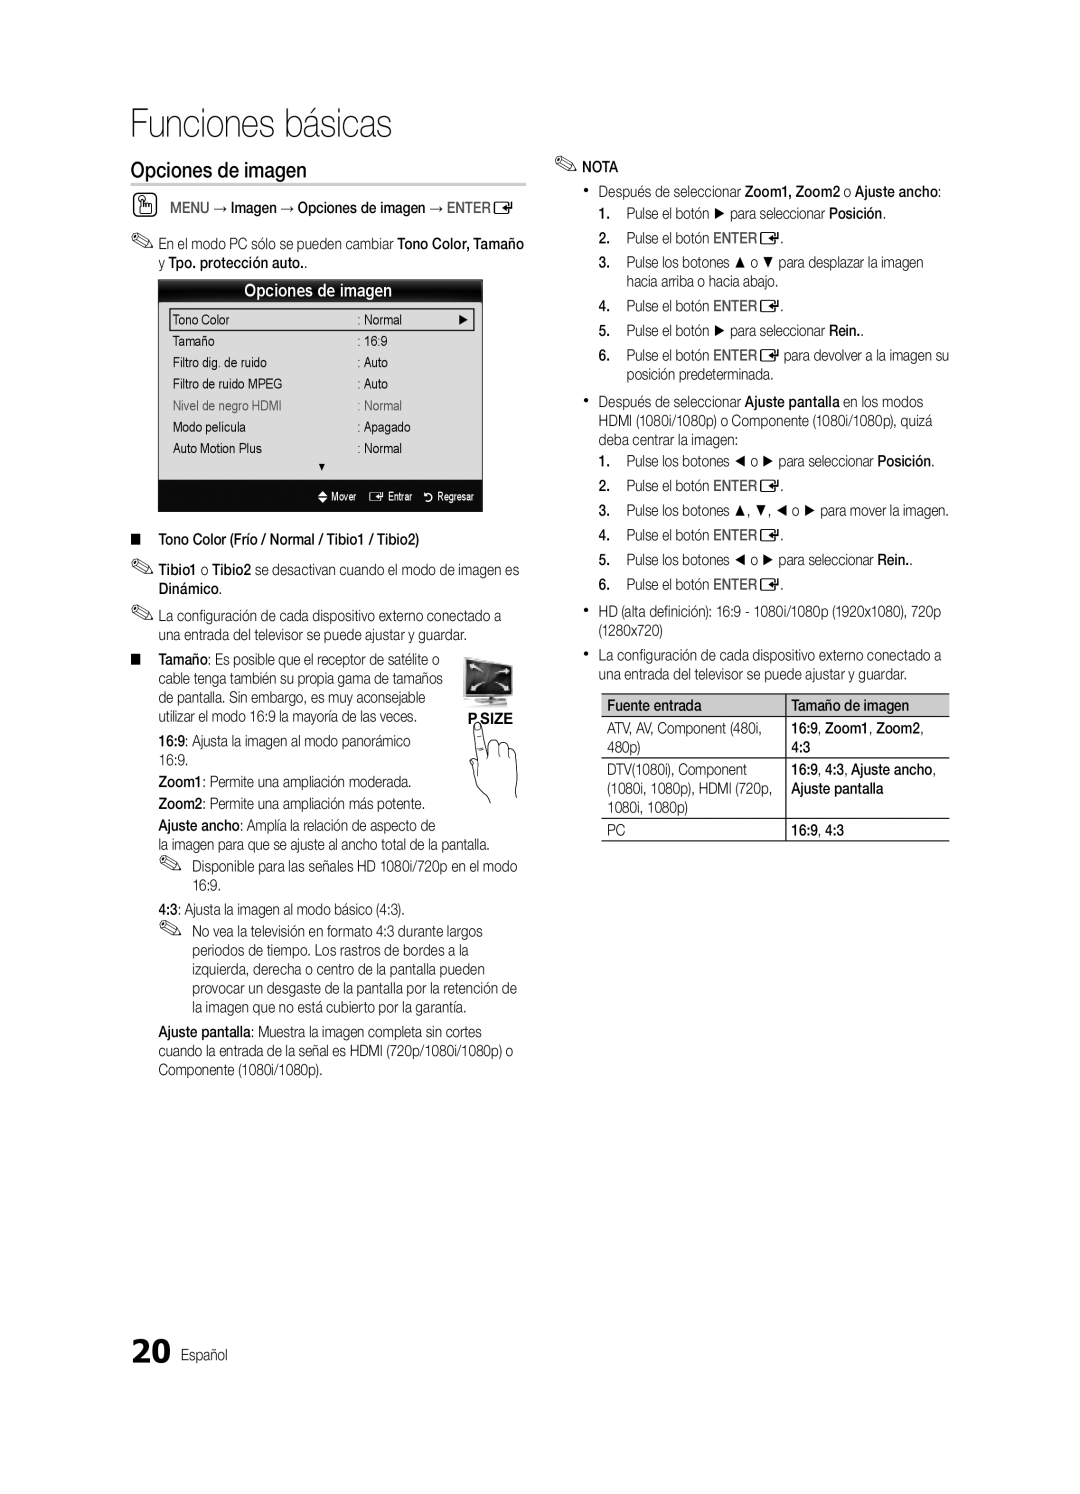 Samsung BN68-03088A-01, Series C9 user manual Opciones de imagen, Funciones básicas 